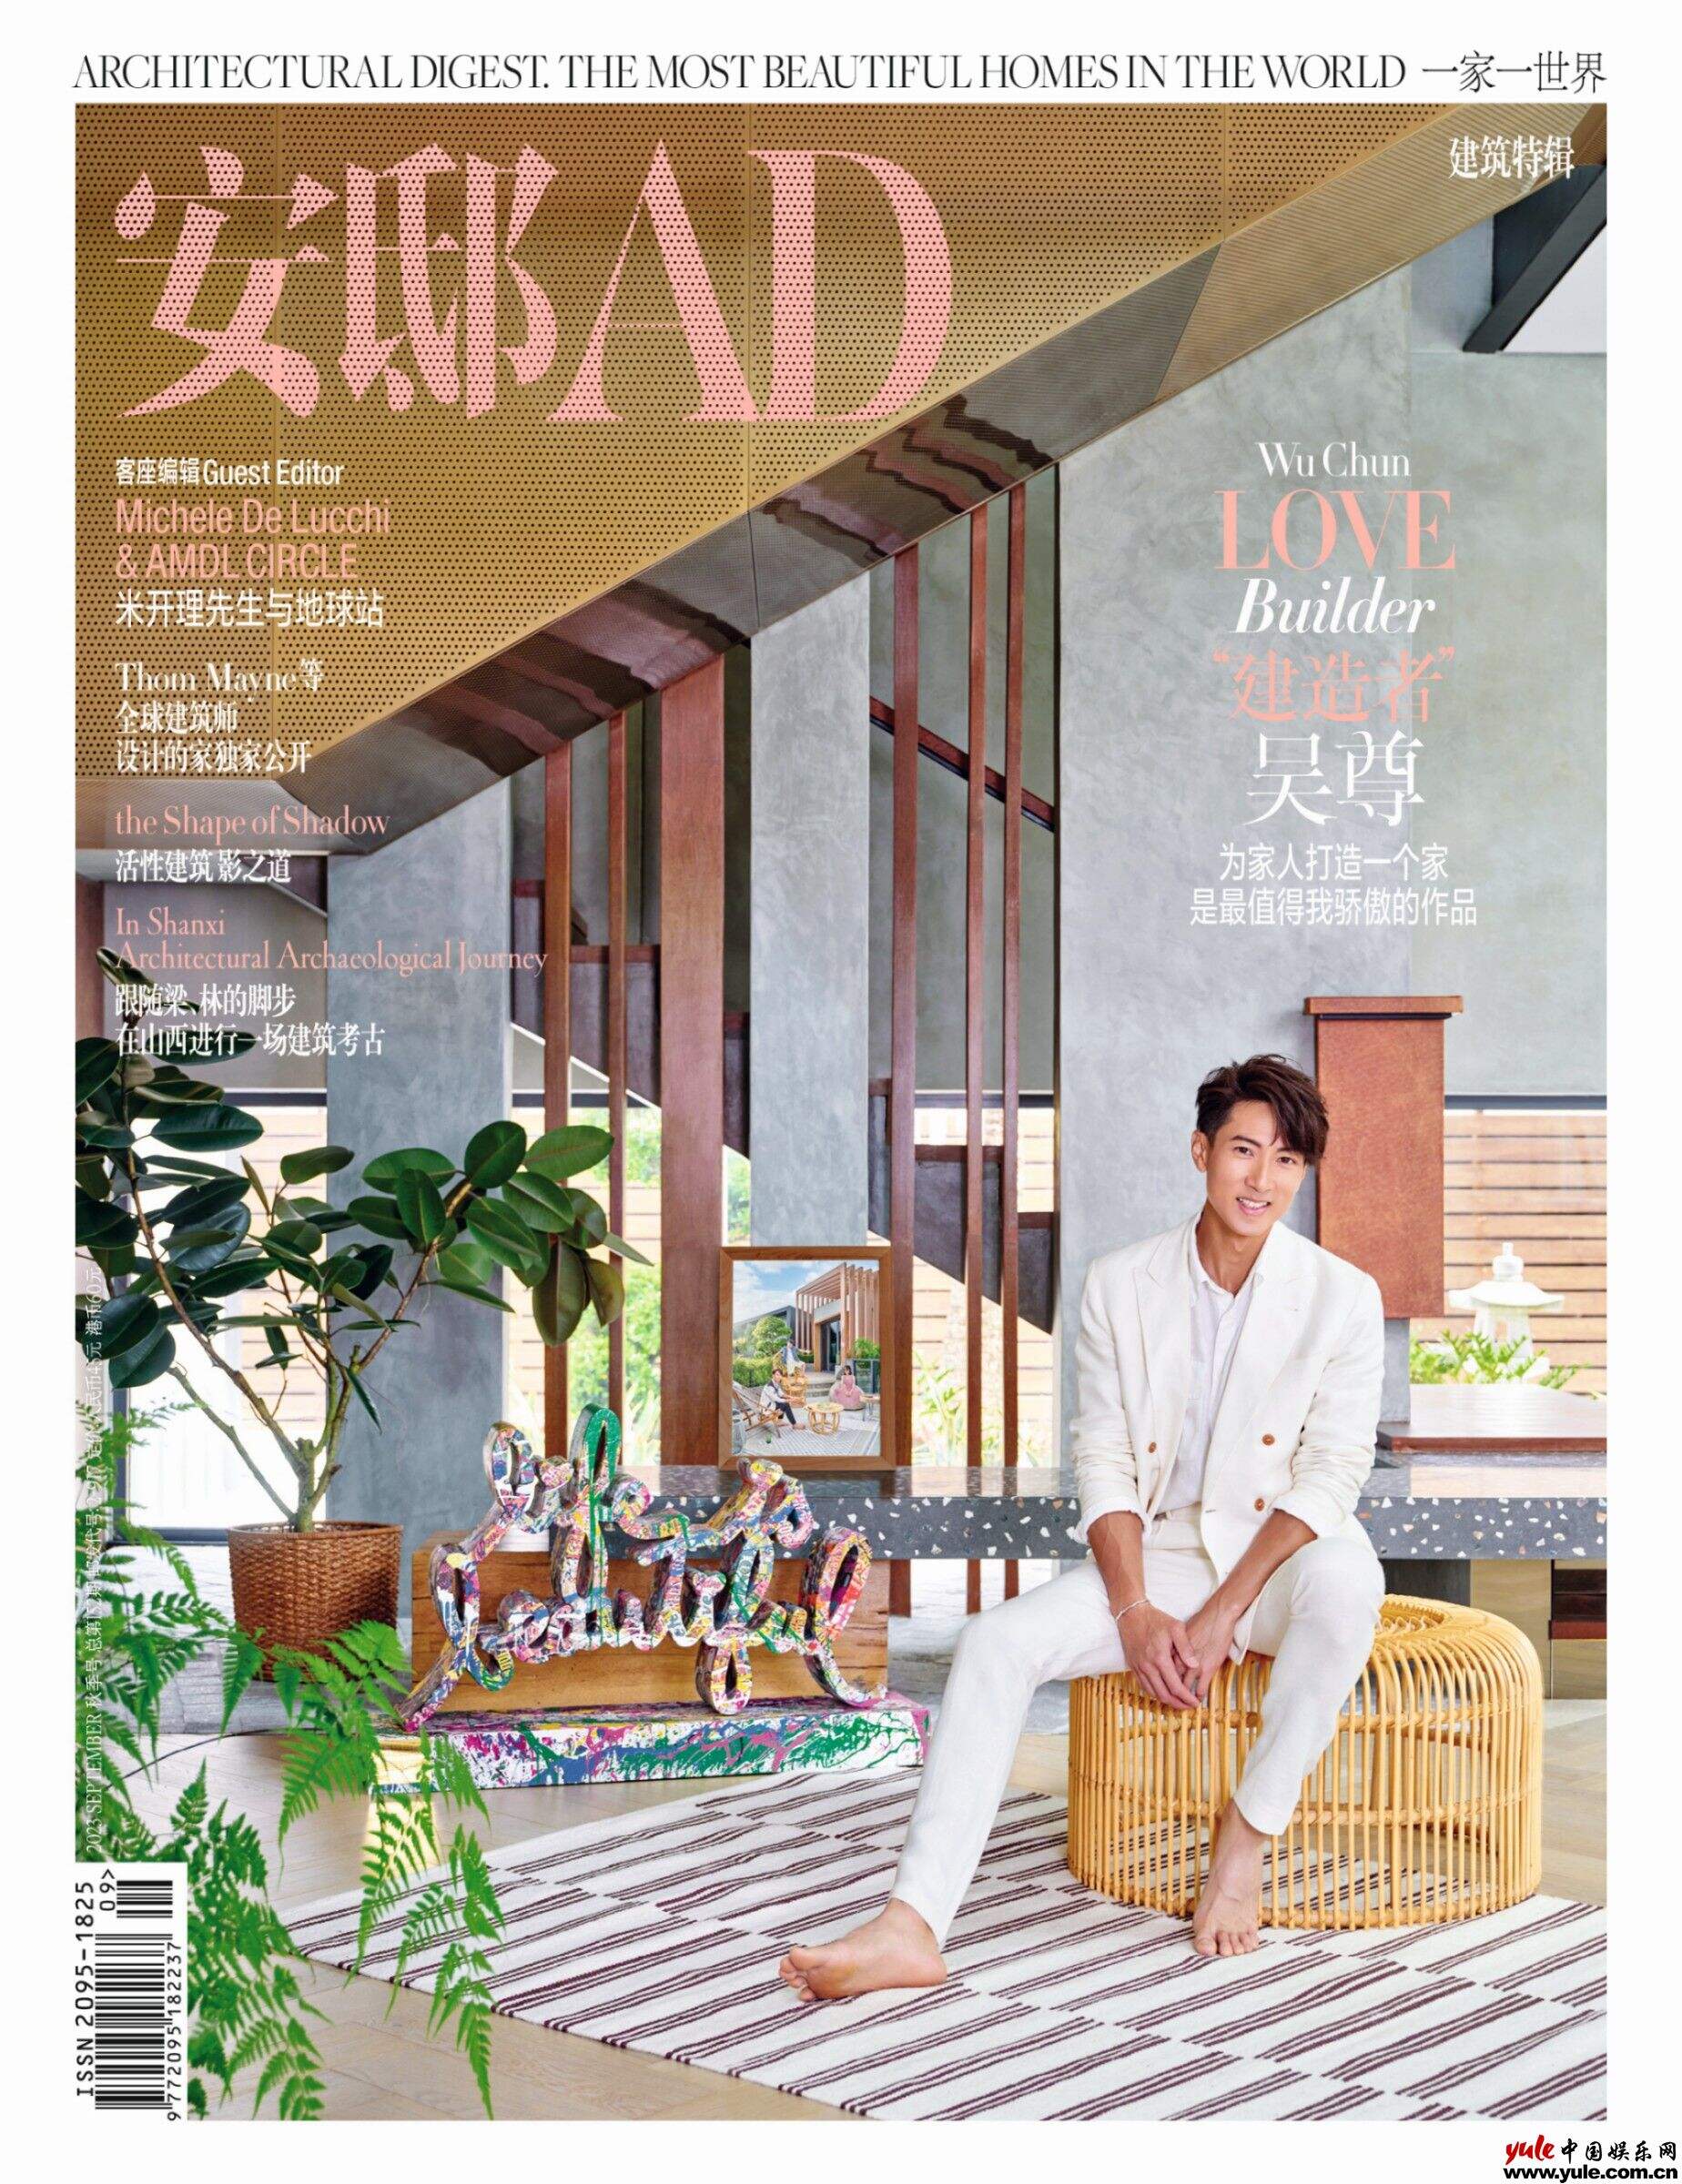 《安邸AD》九月秋季刊封面释出  “建造者”吴尊为家人打造爱的家园